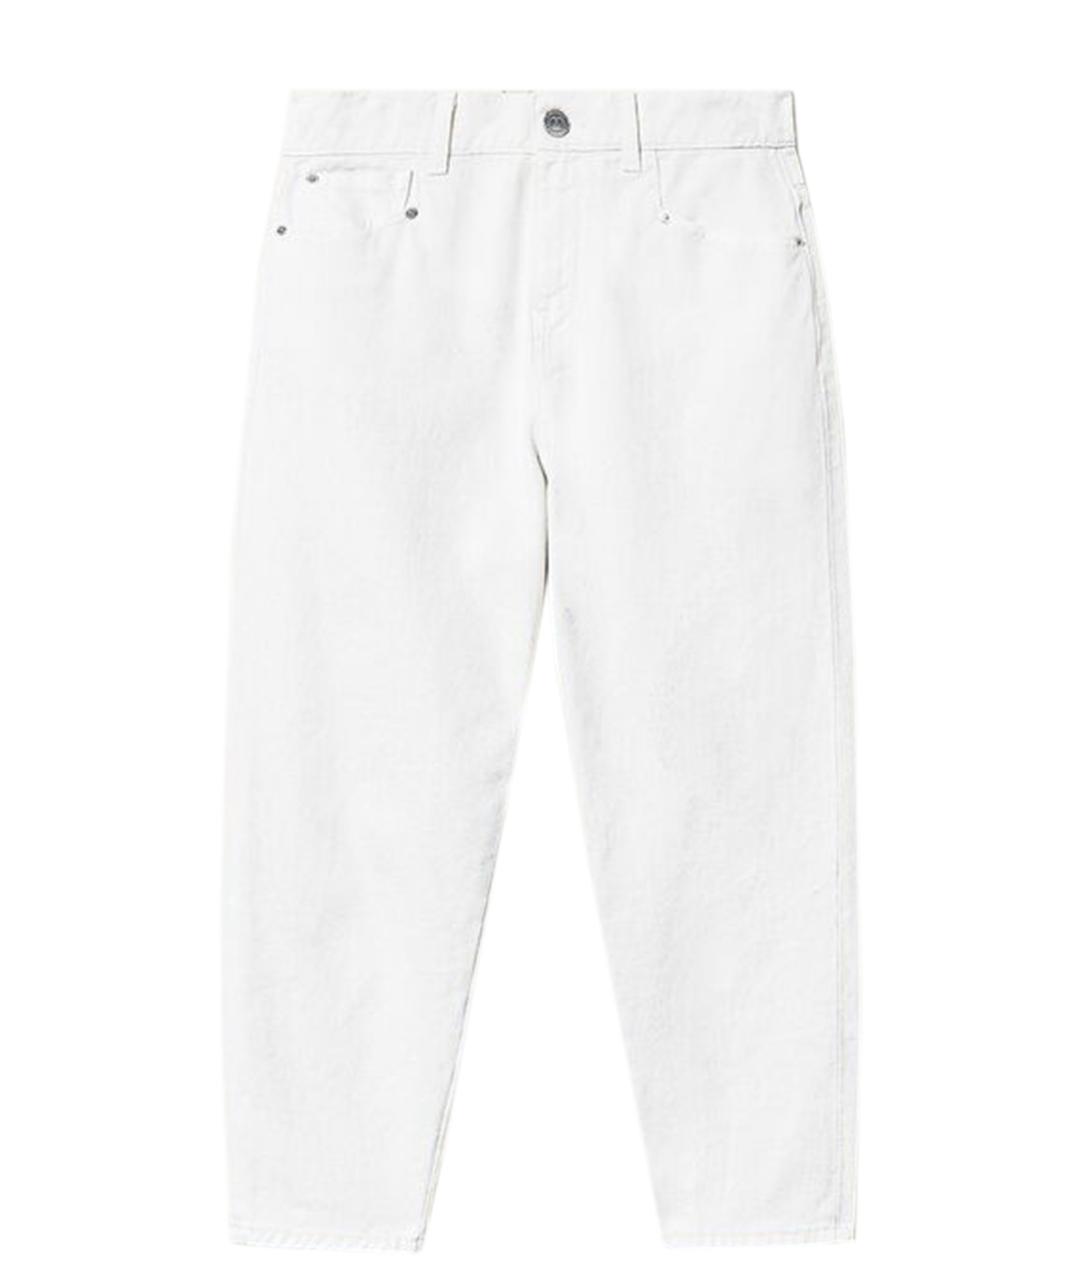 TWIN-SET Белые хлопковые прямые джинсы, фото 1